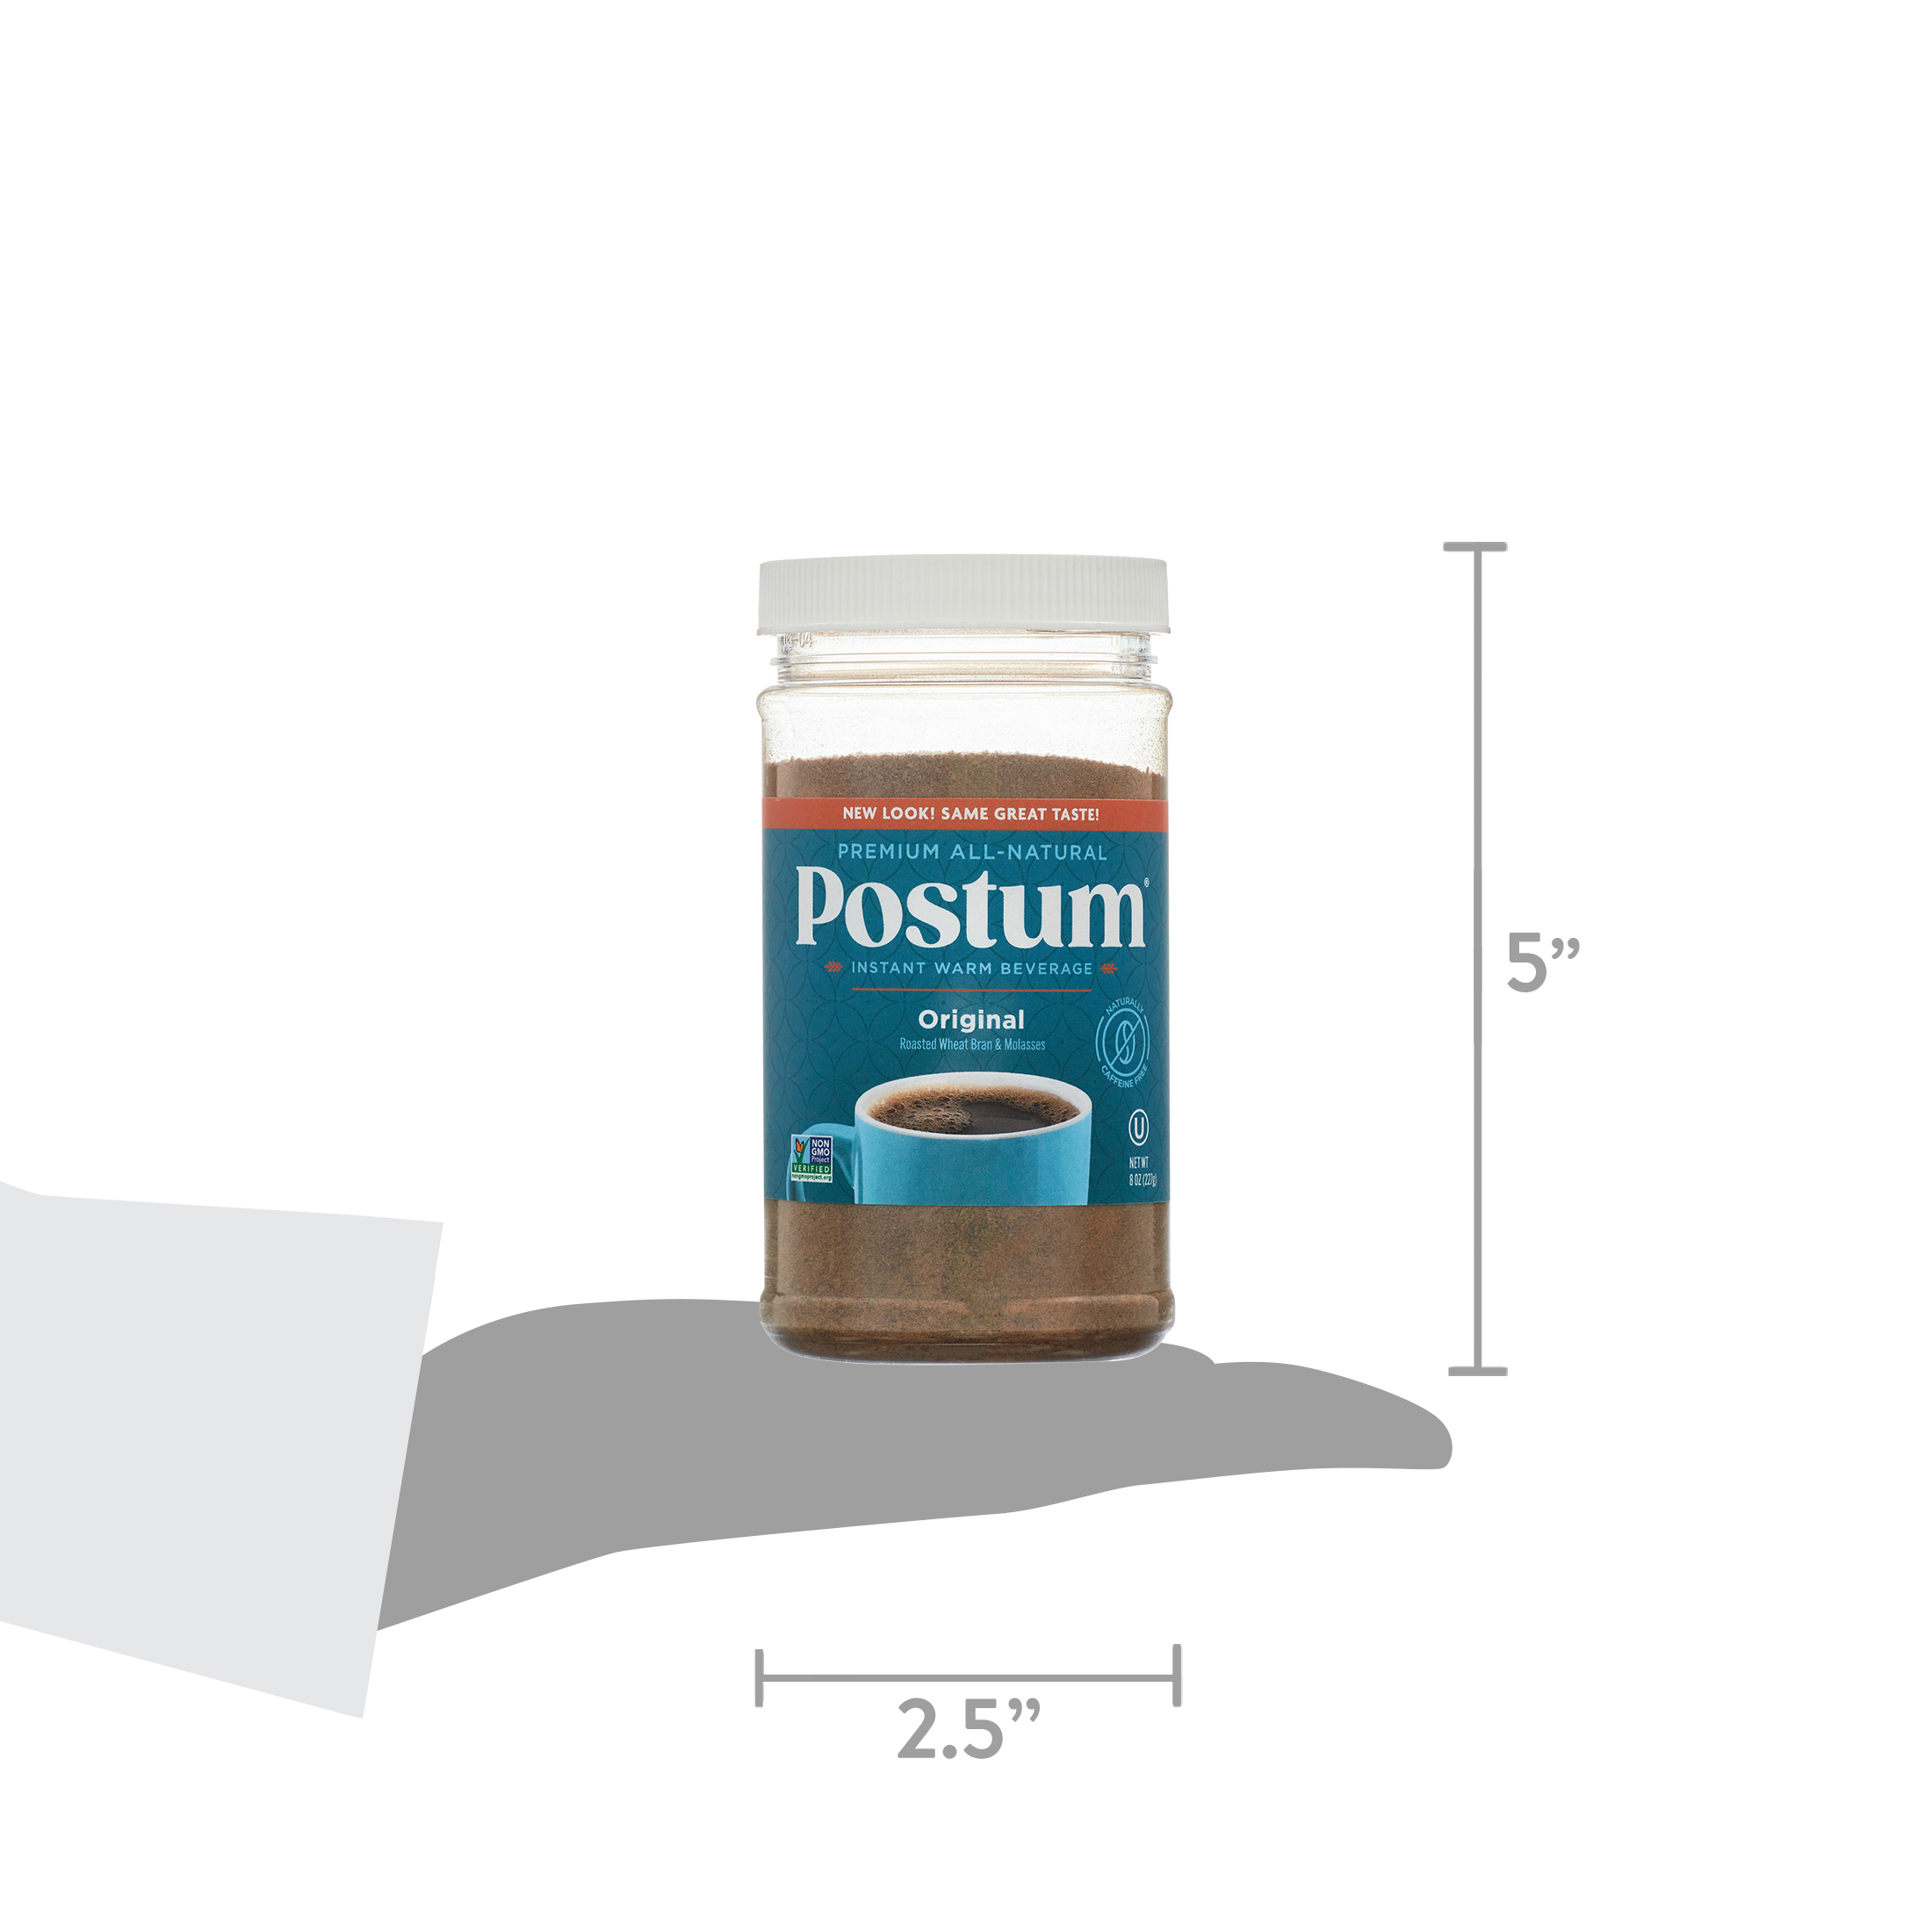 Postum Caffeine-Free Instant Coffee Substitute, Original Flavor, 8 oz Jar - image 6 of 6